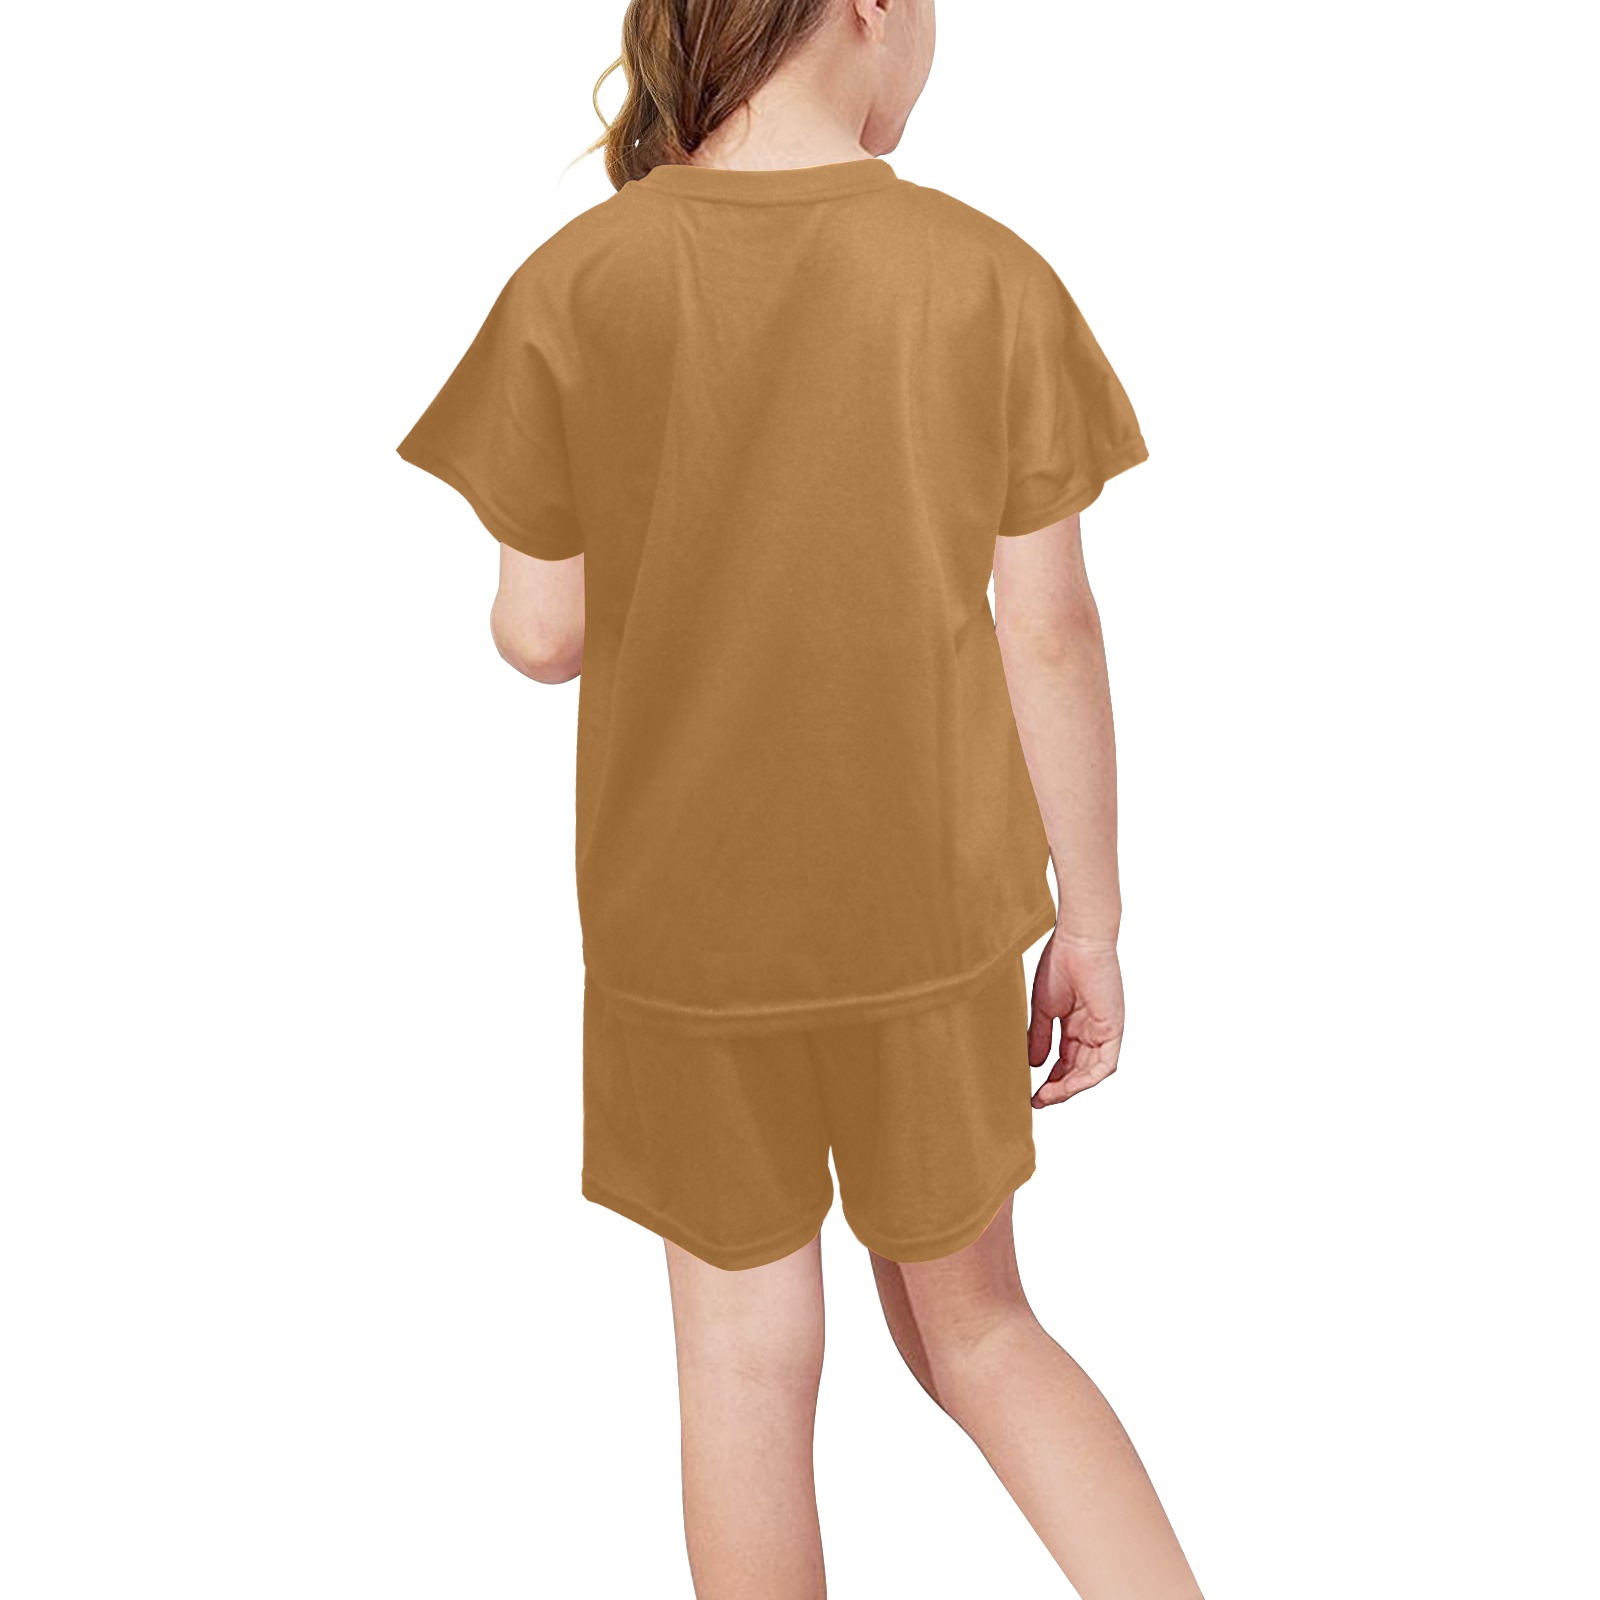 Sudan Brown Big Girls' Short Pajama Set